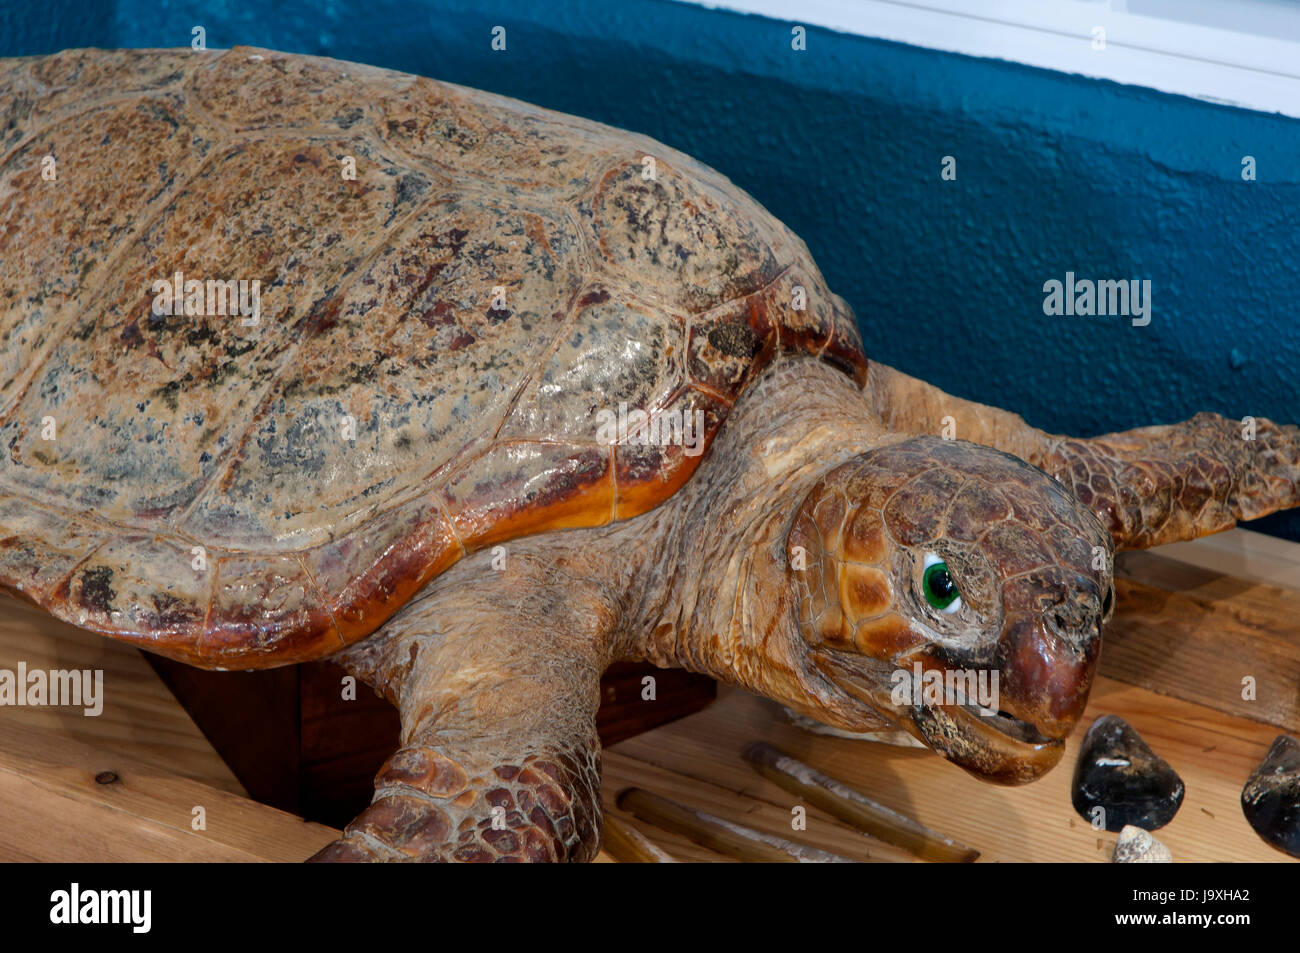 Musée de la mer - tortue caouanne, San Cibrao-Cervo, Lugo province, région de la Galice, Espagne, Europe Banque D'Images